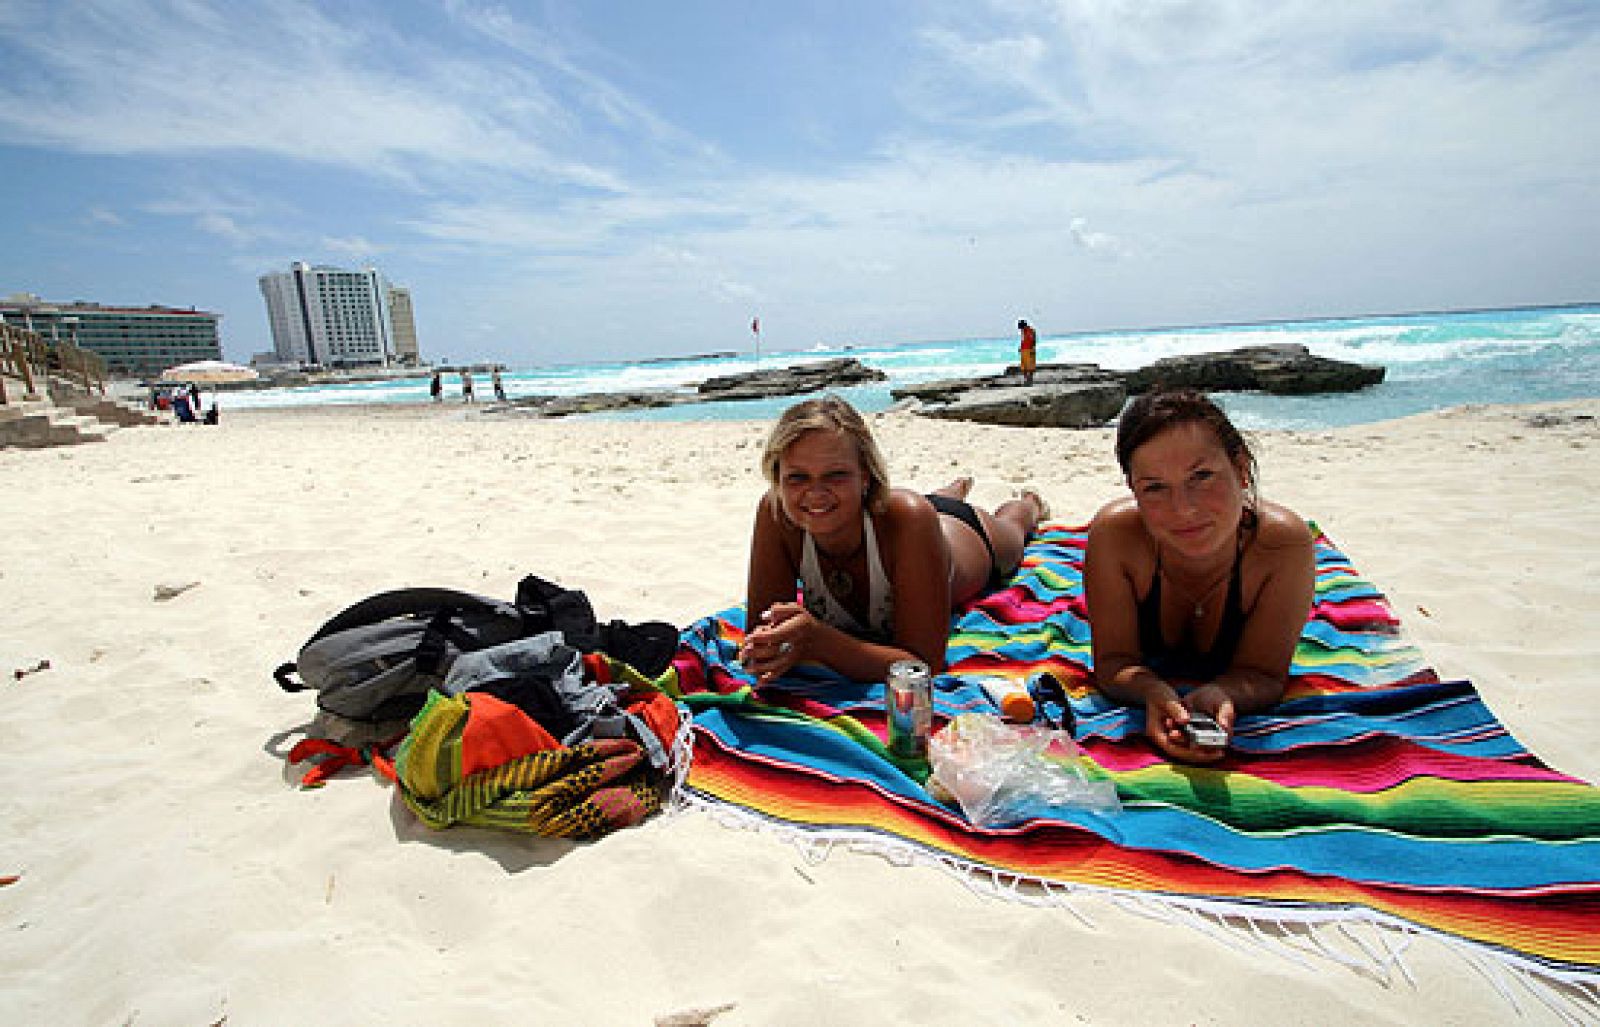 La gripe preocupa entre los turistas de Cancún